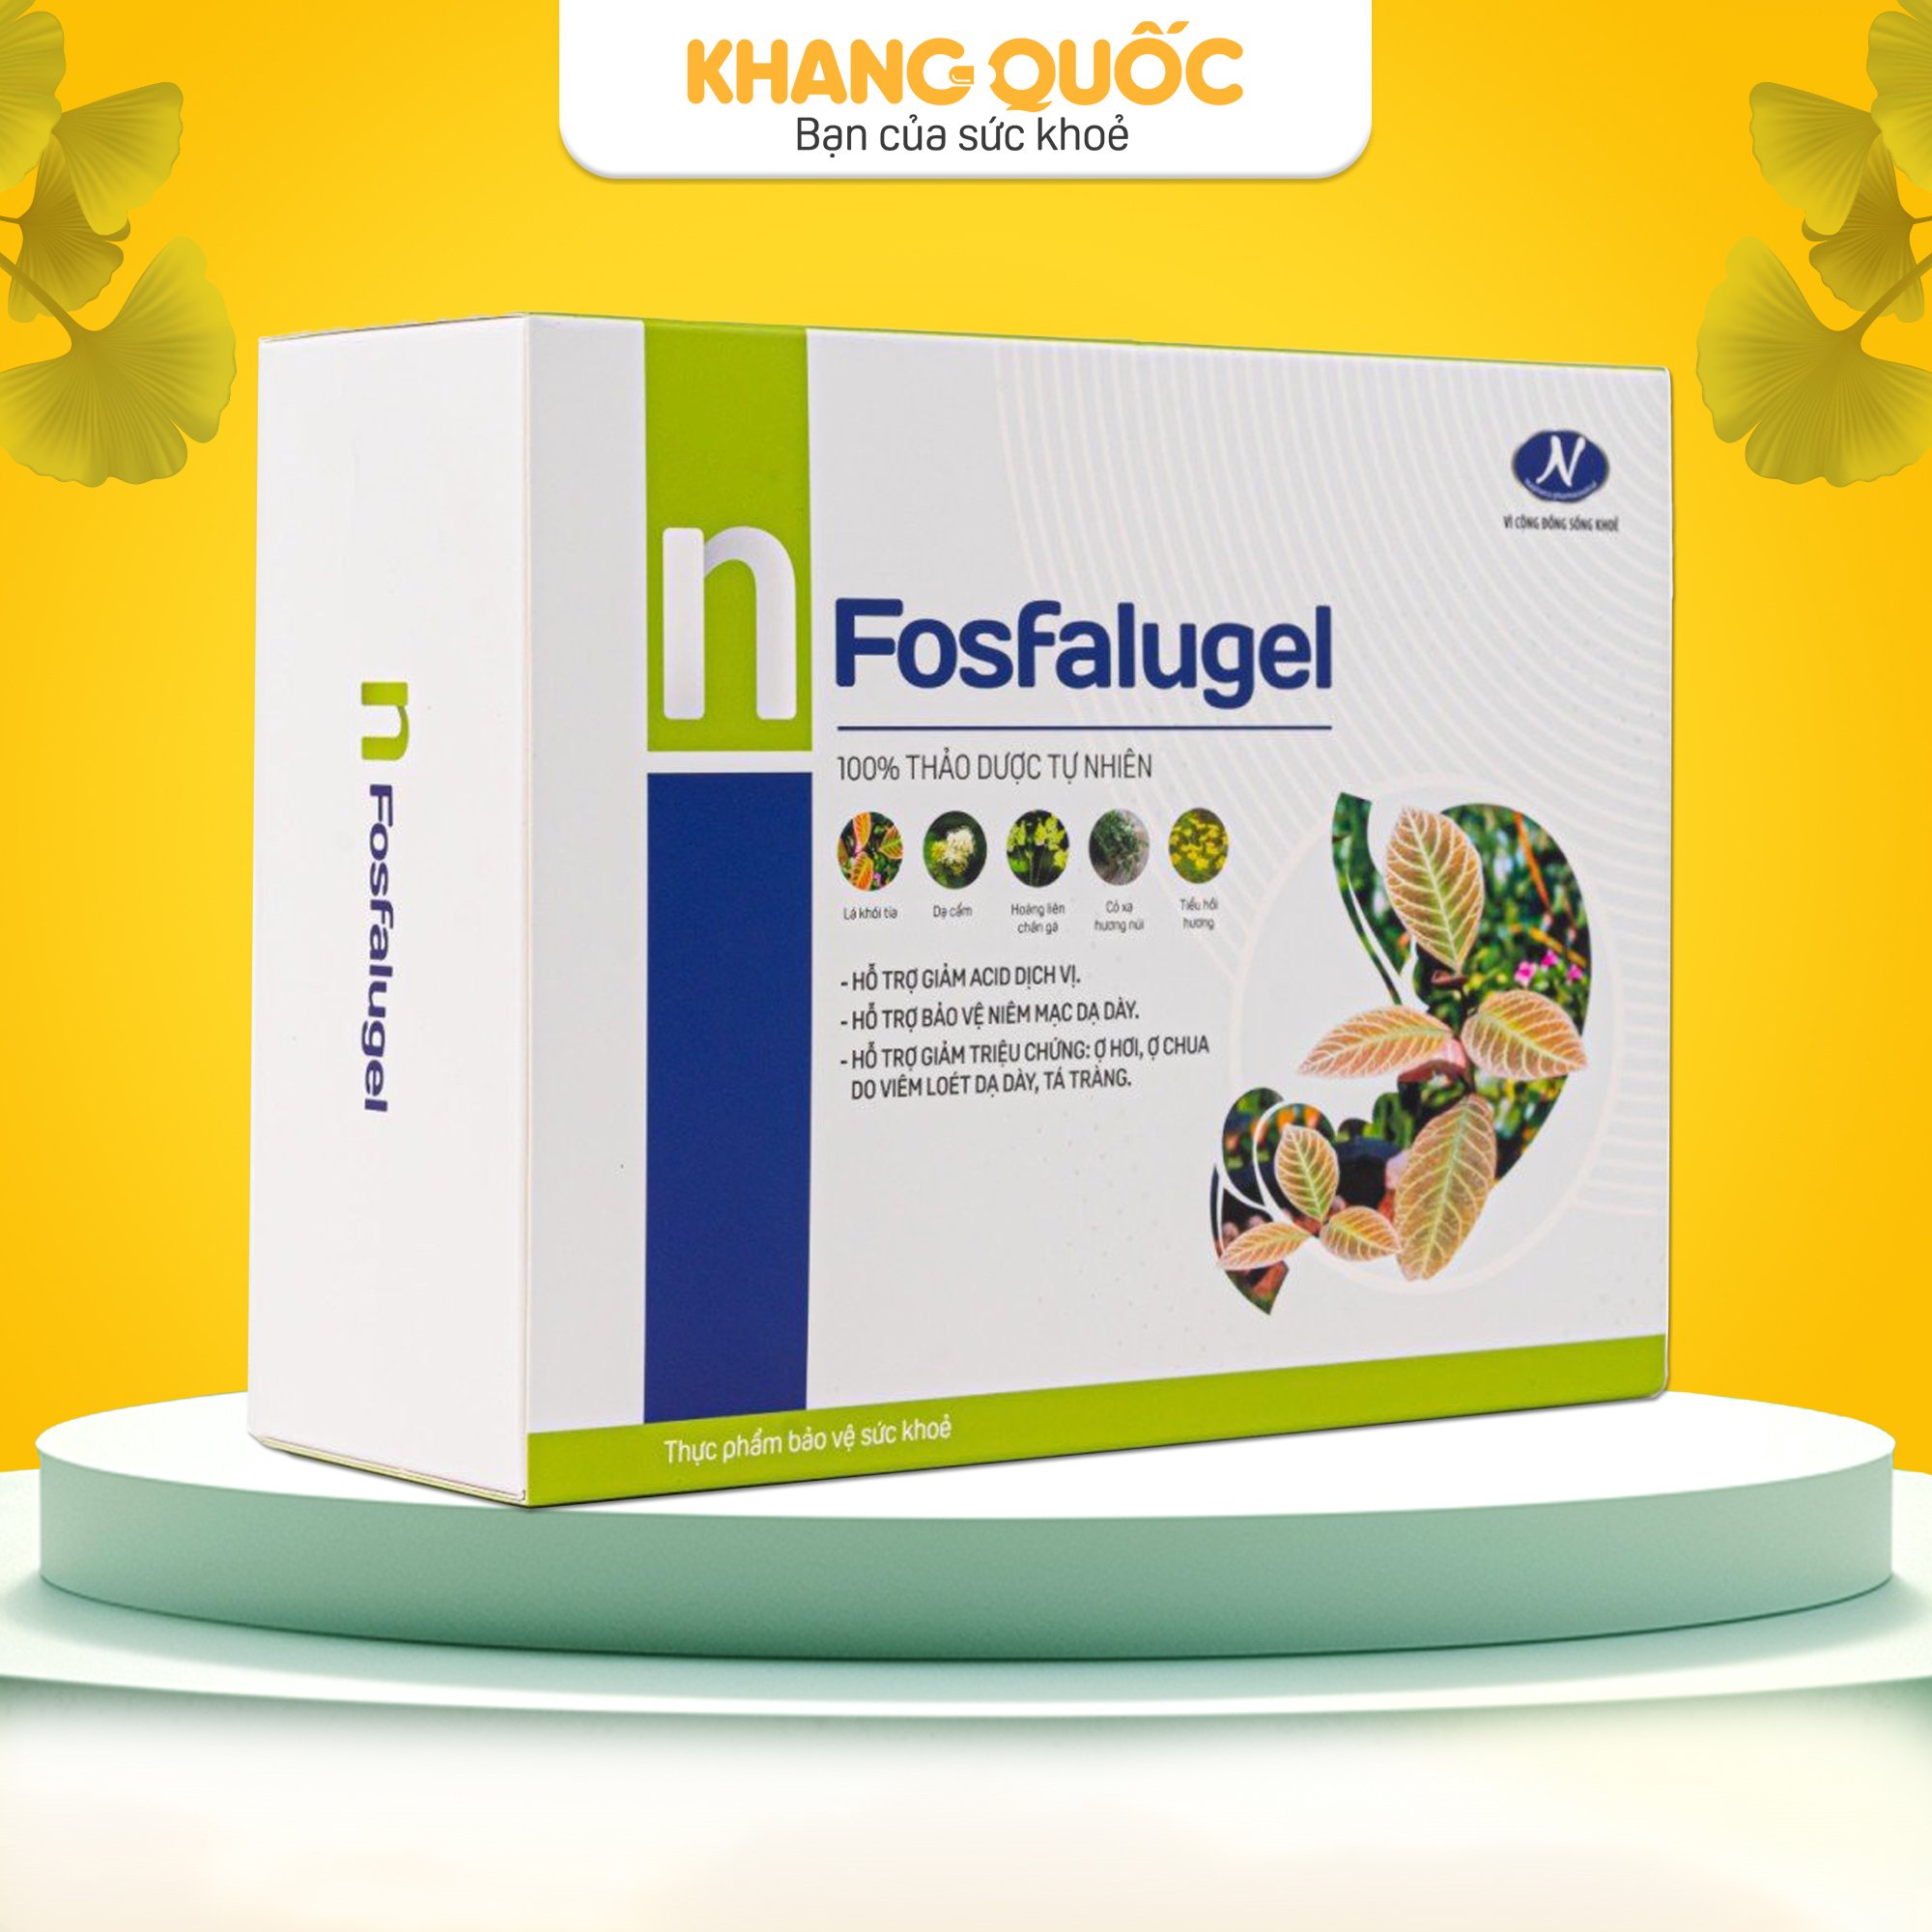 Giảm đau dạ dày với Fosfalugel 100% từ thảo dược tự nhiên